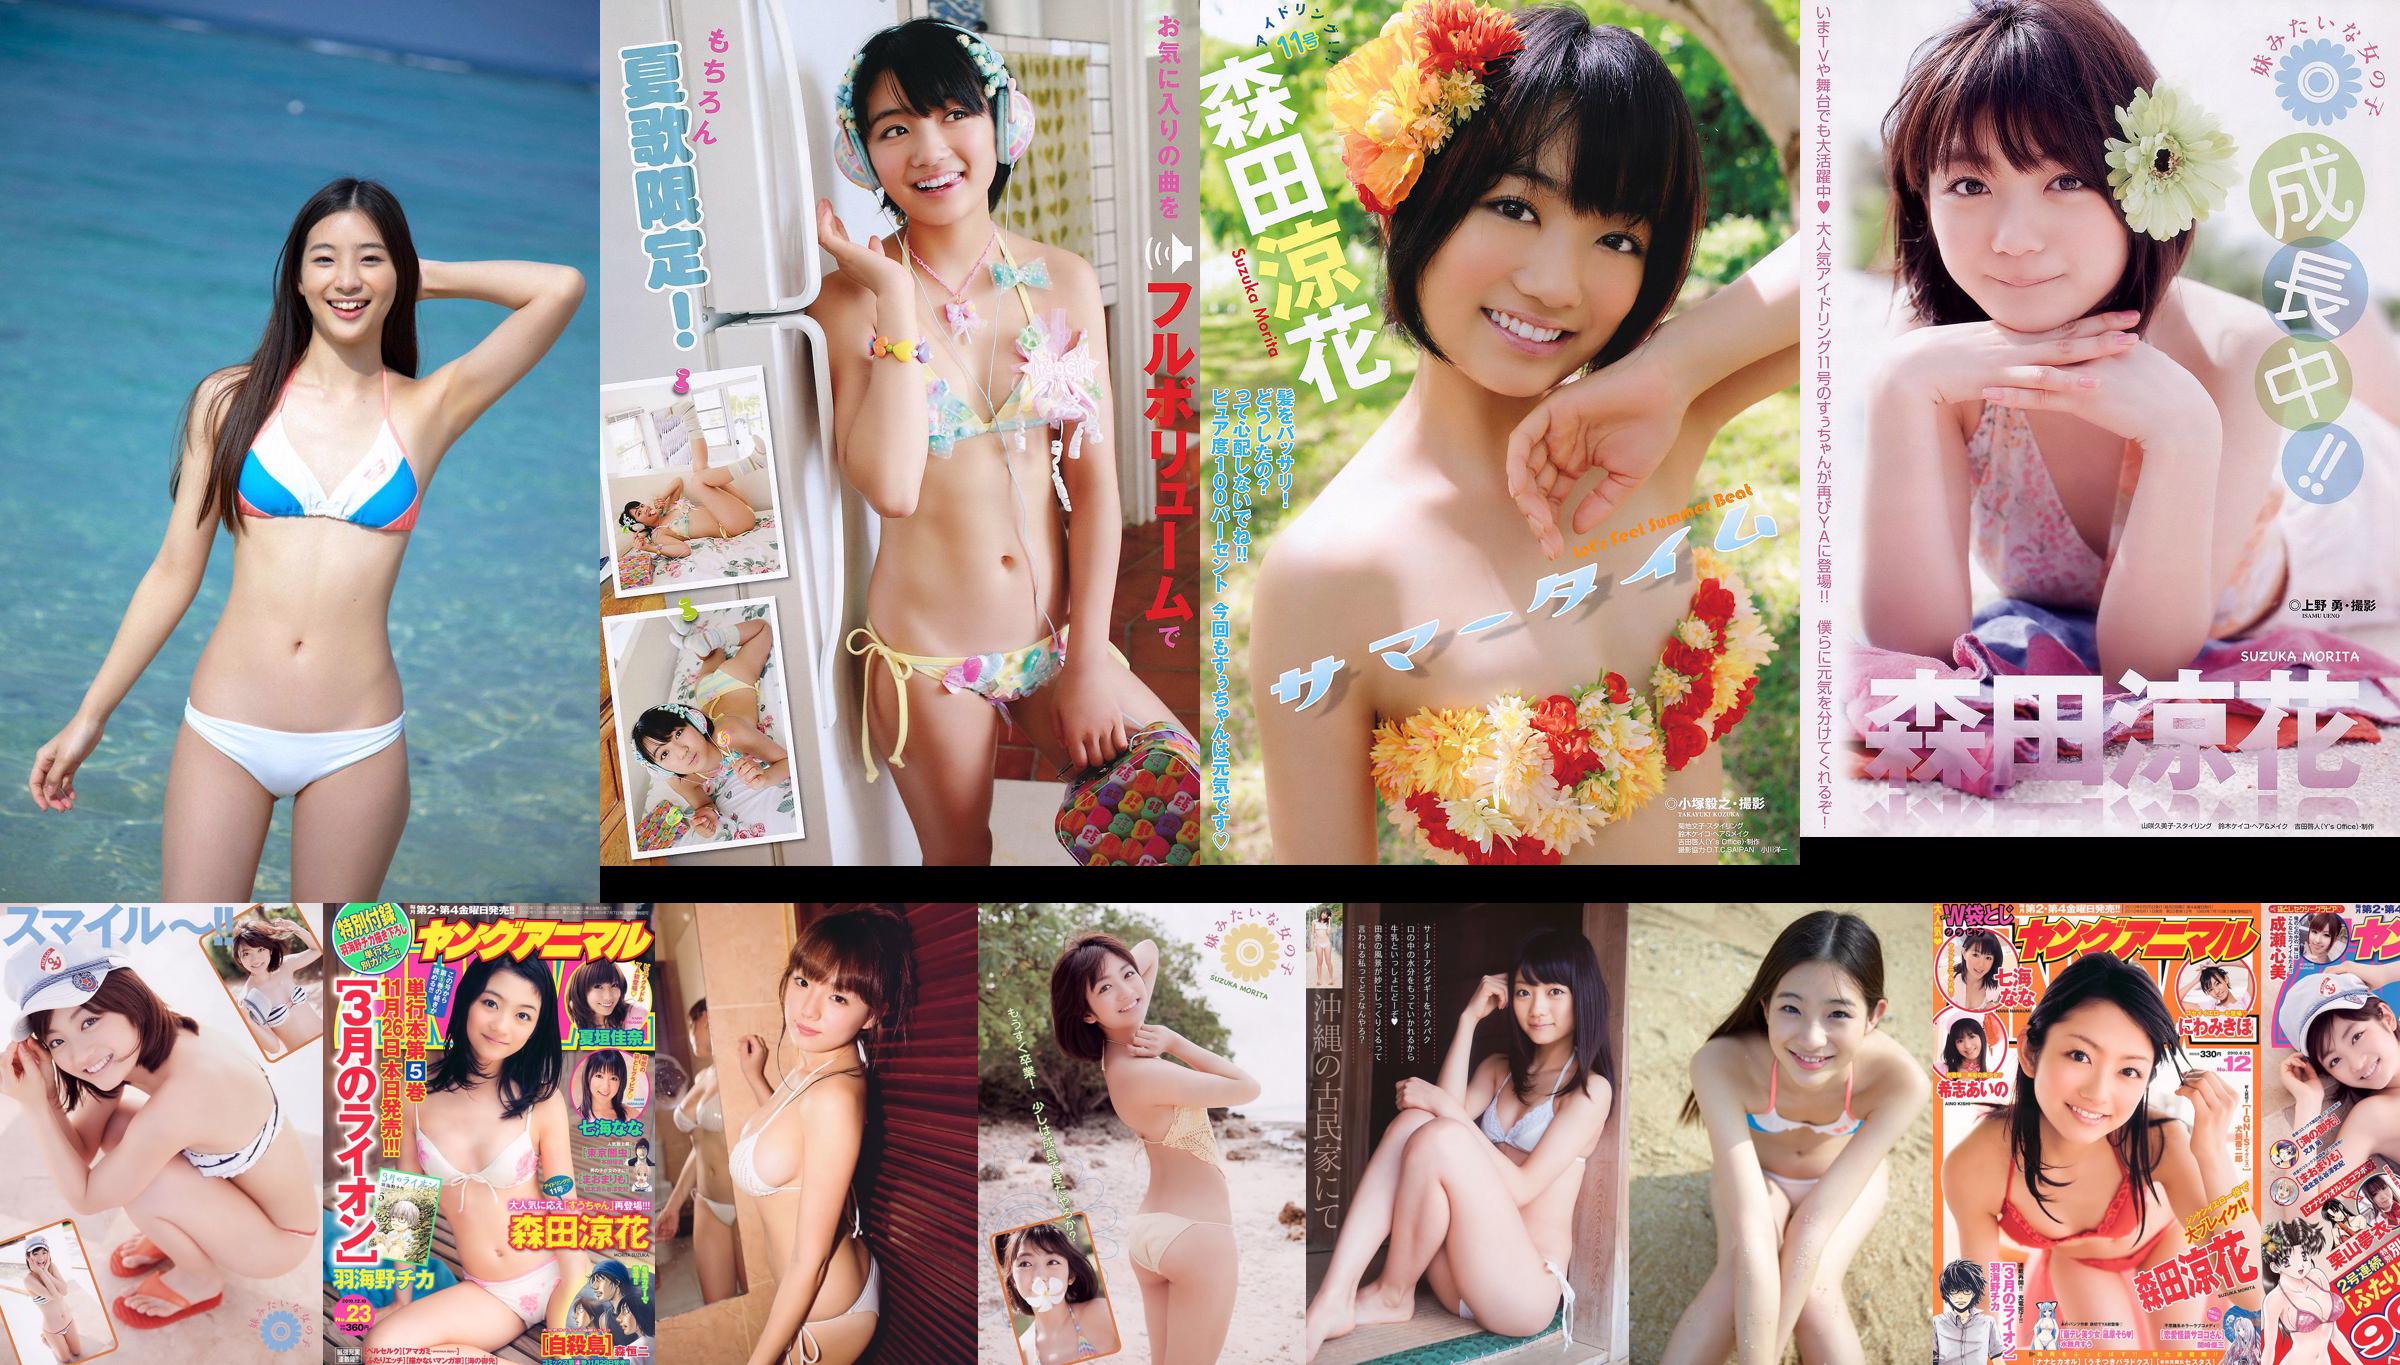 [Wekelijkse grote komische geesten] Akari Hayami 2014 No.46 foto No.e1998c Pagina 1